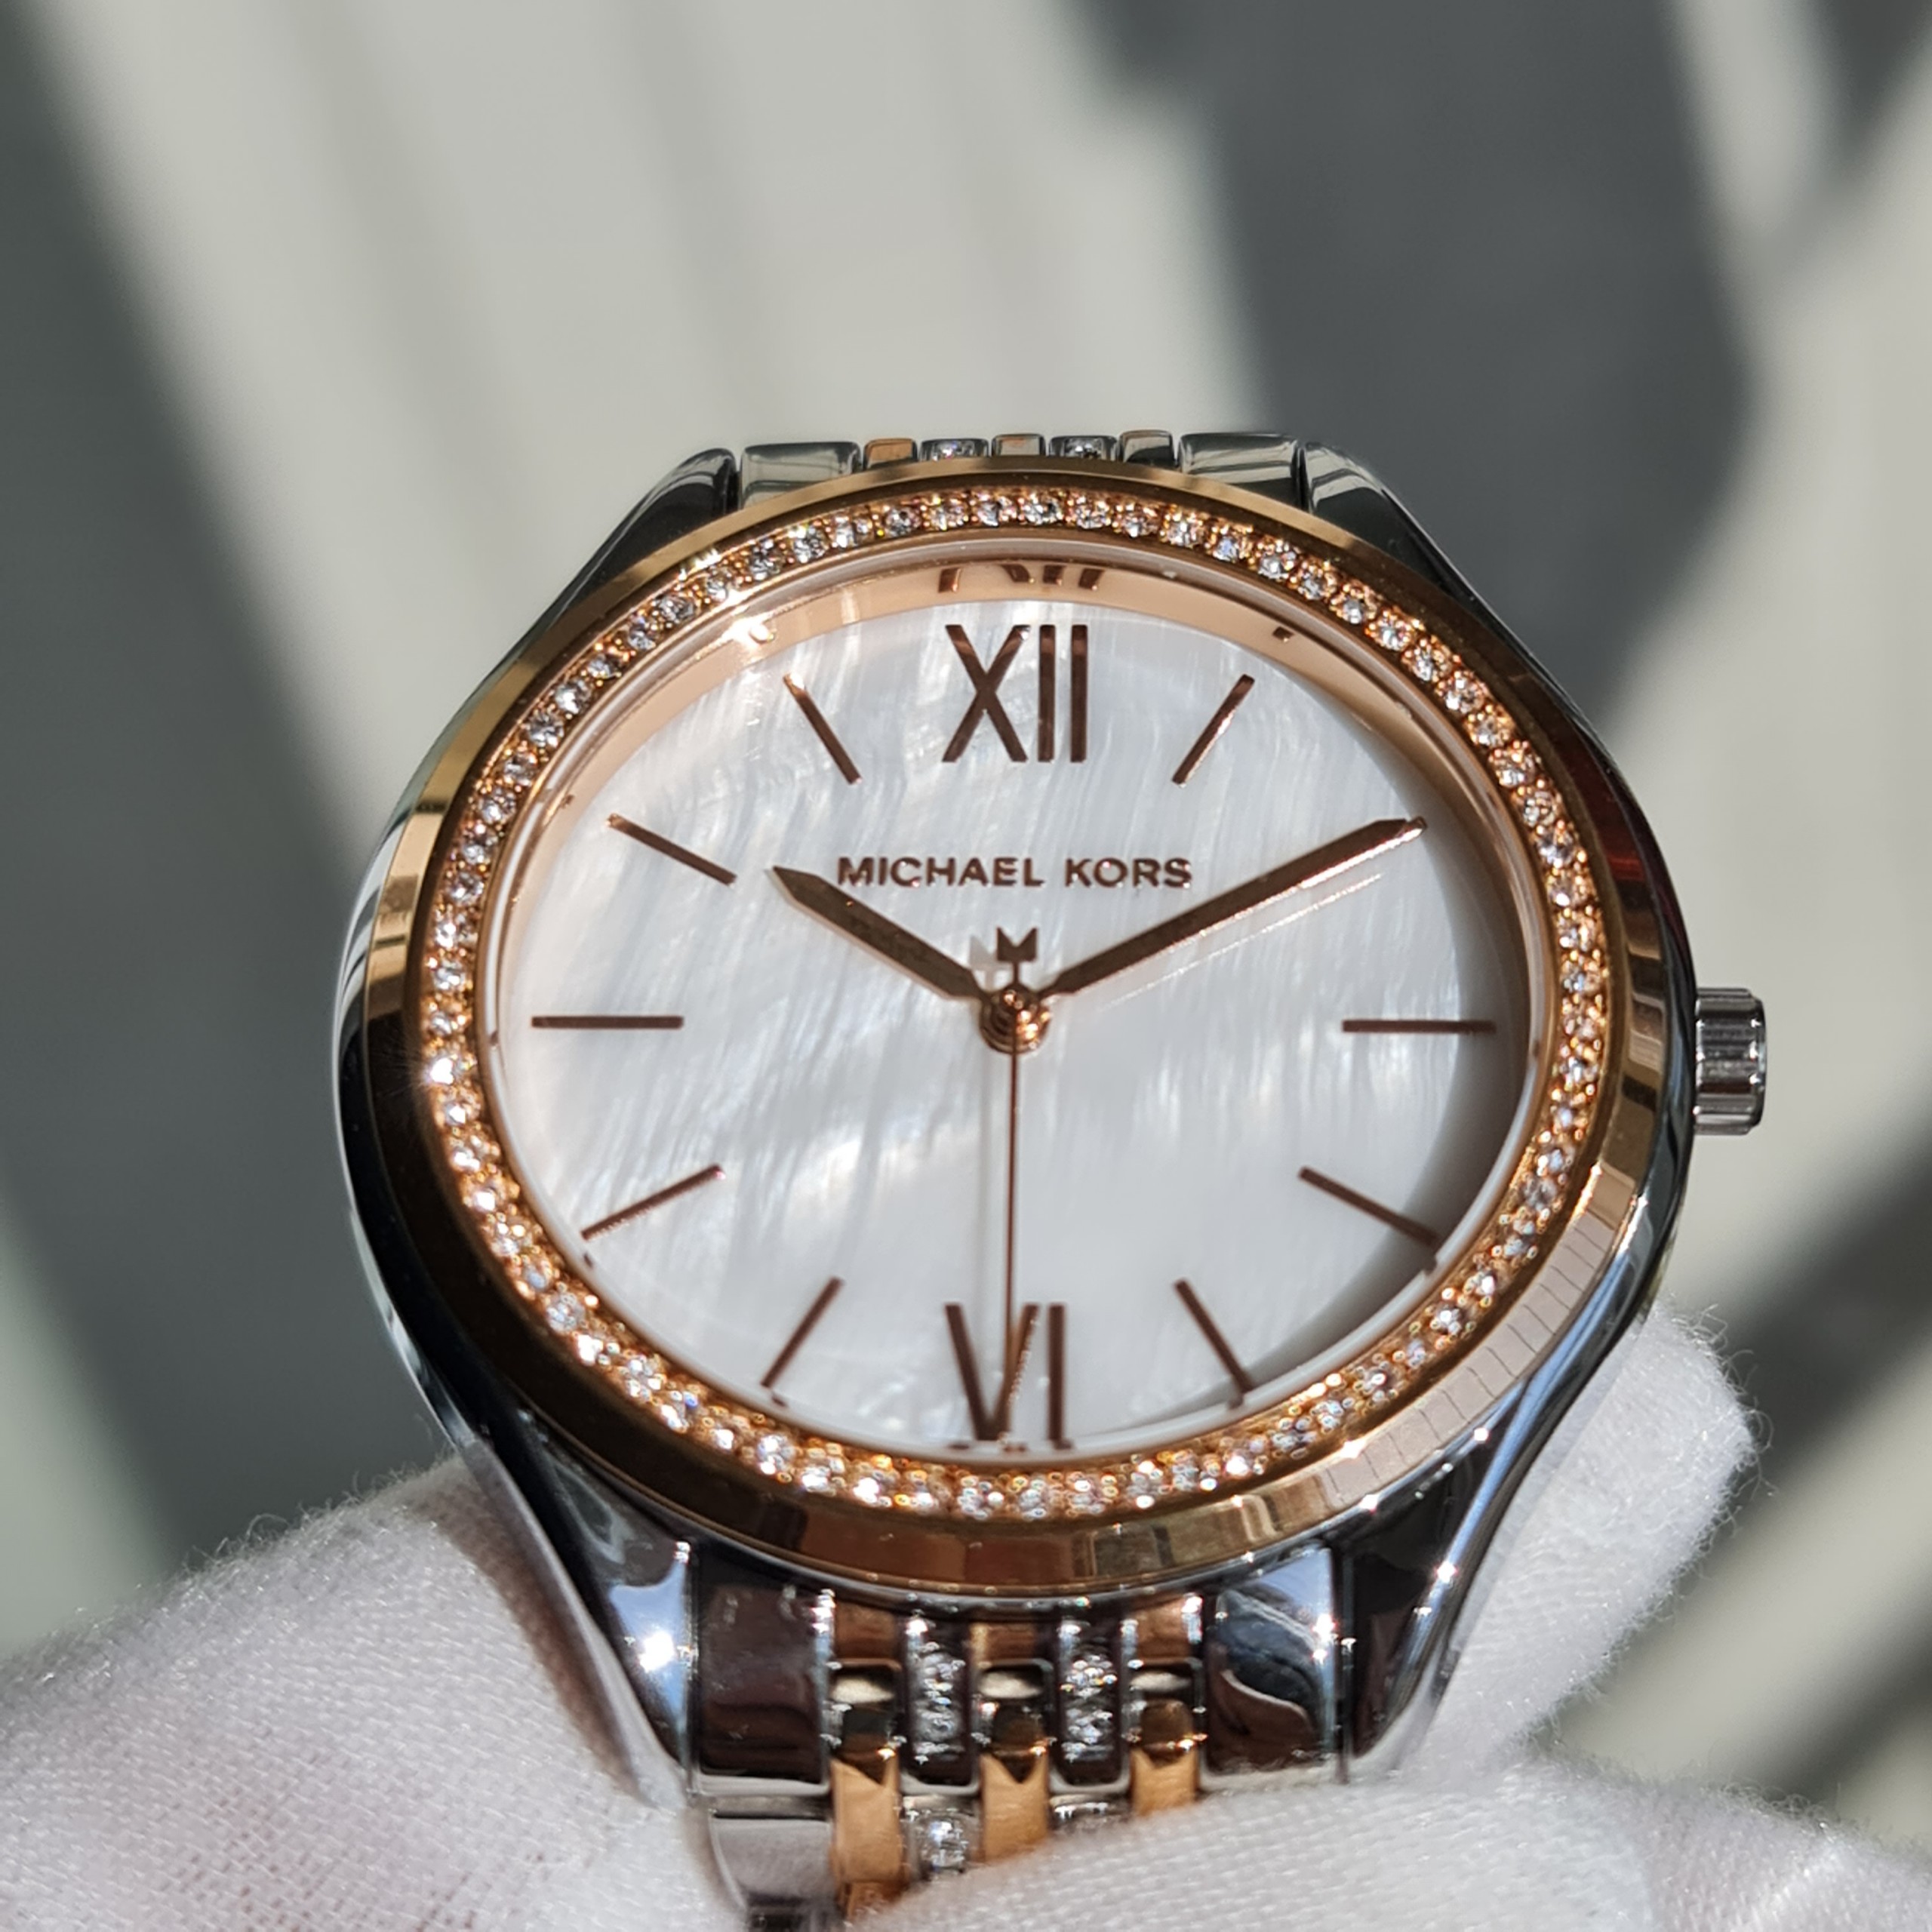 Đồng hồ MK Michael Kors nữ chính hãng Michael Kors MK5948 33mm